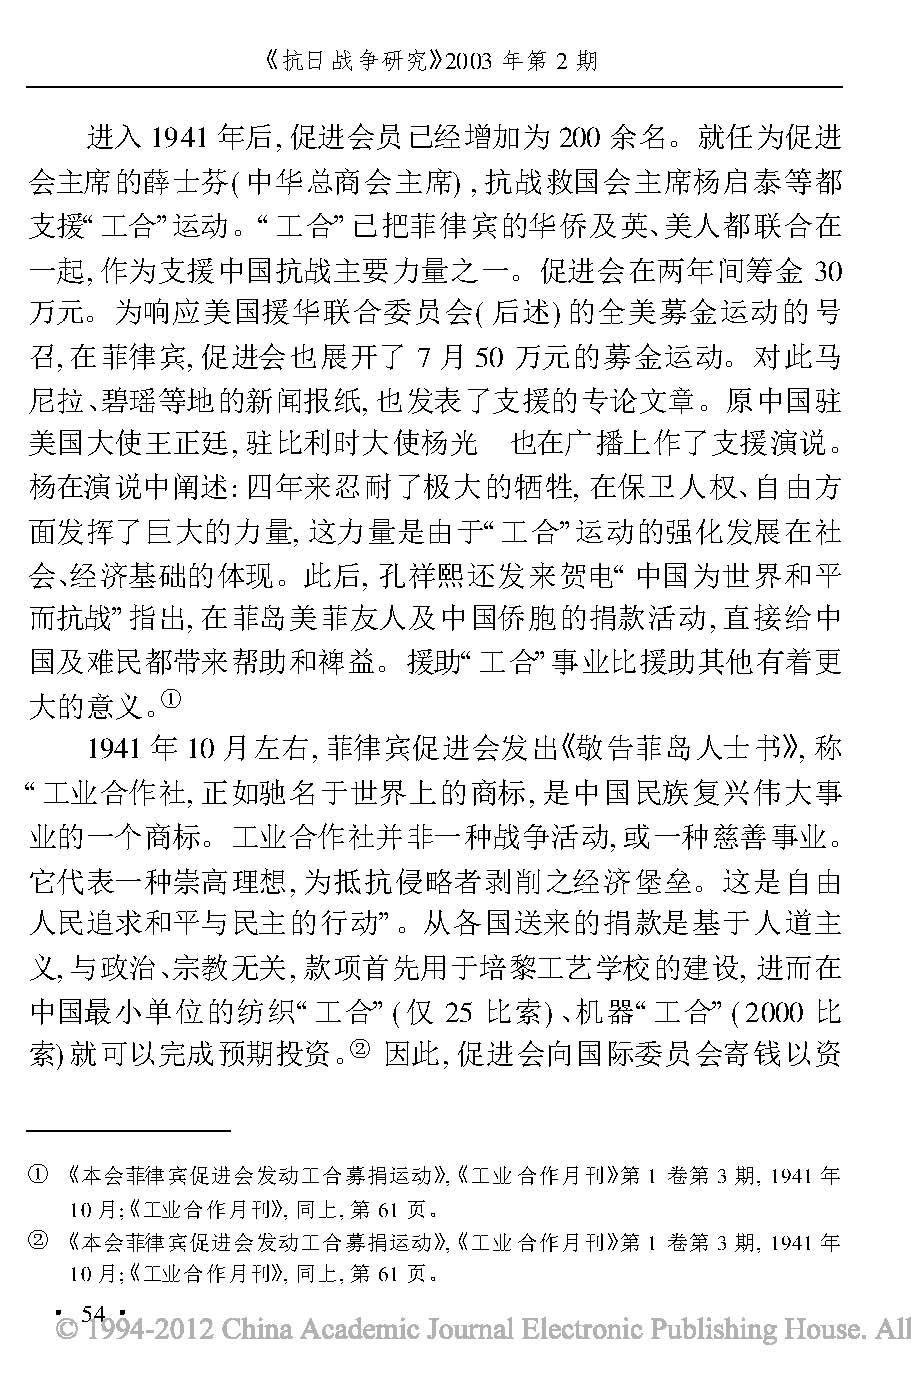 抗日战争时期的华侨和中国工业合作运动_页面_11.jpg